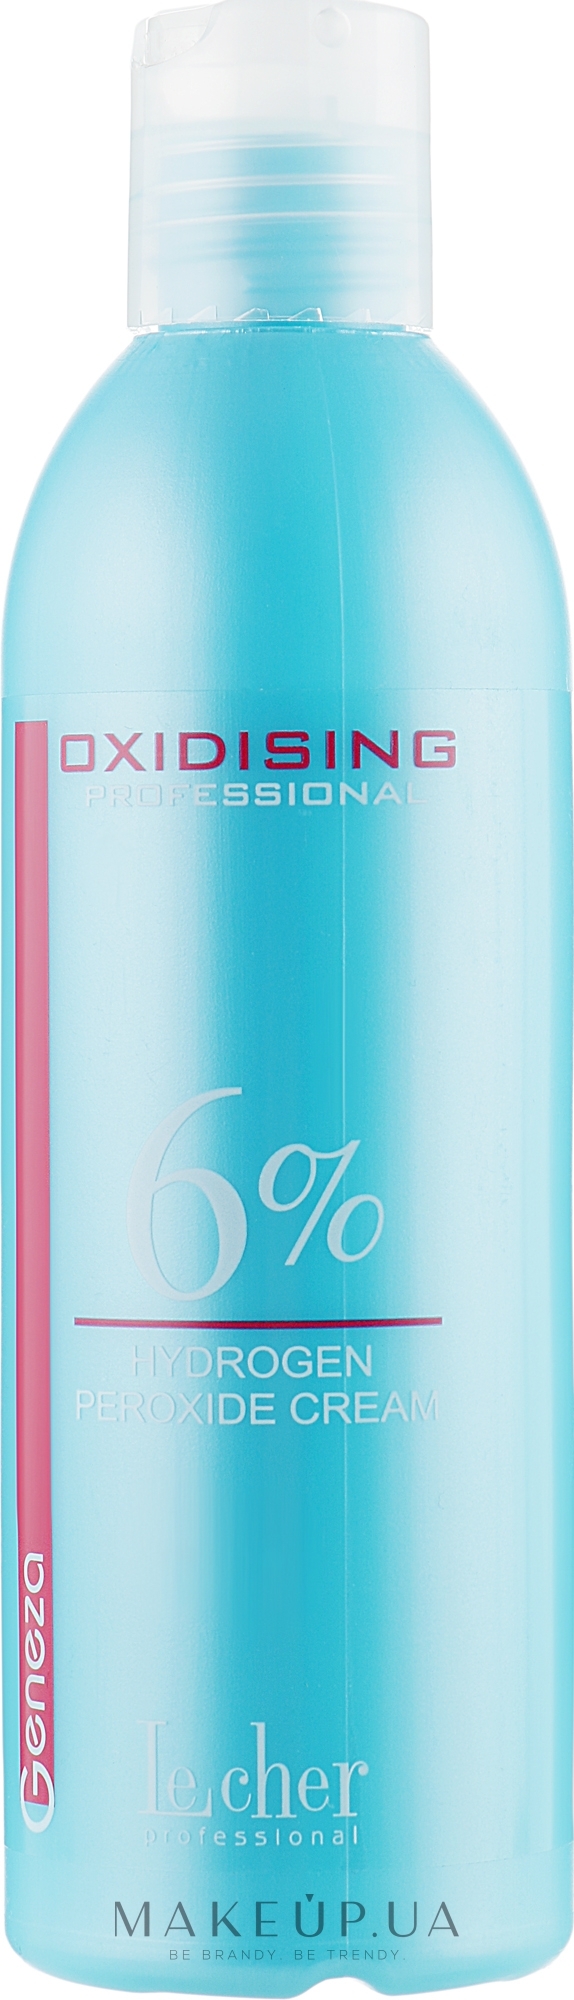 Окислительная эмульсия 6% - Lecher Professional Geneza Hydrogen Peroxide Cream — фото 200ml